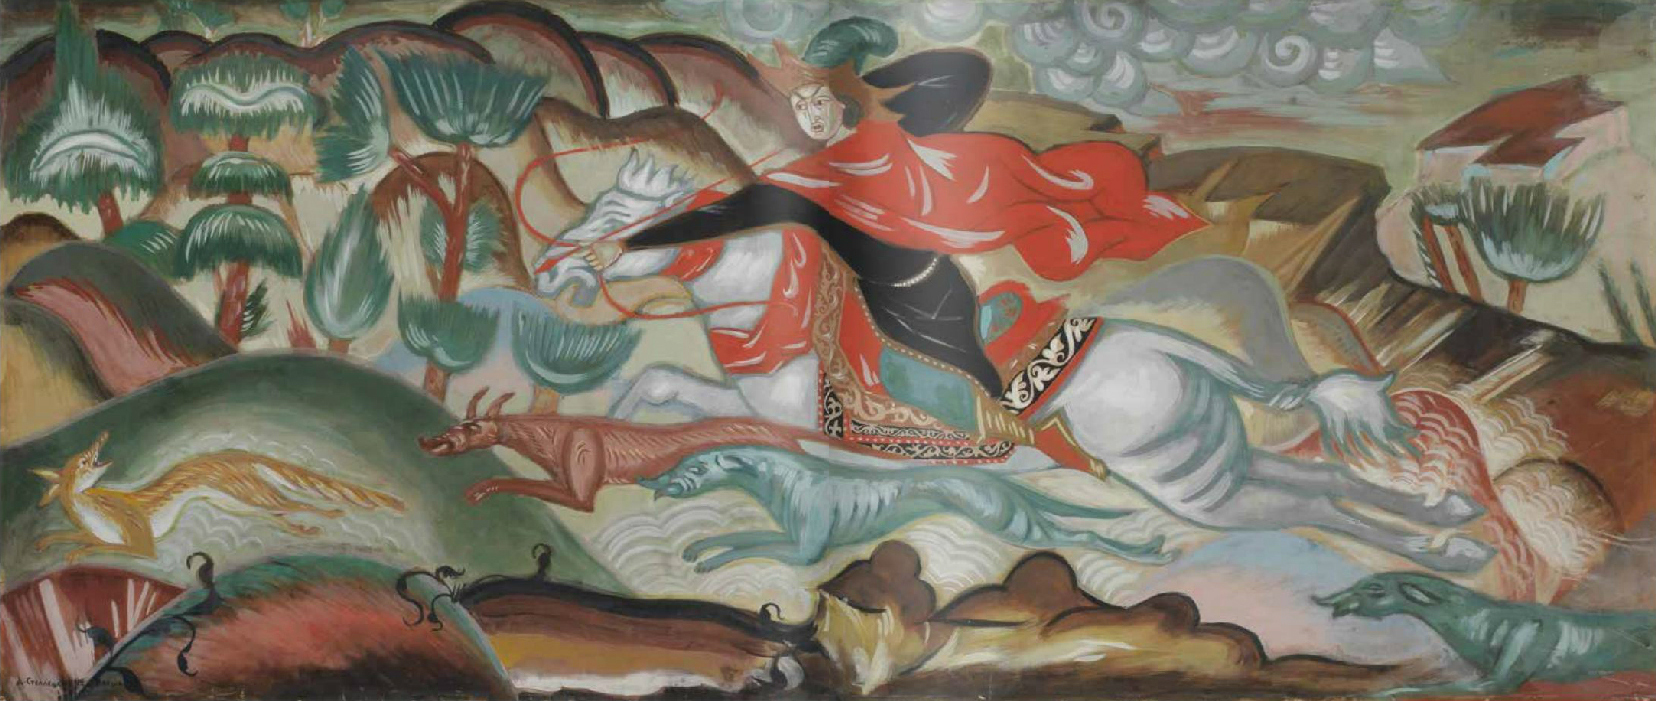 Дмитрий Стеллецкий. Охота на лиса («Охота»), 1912